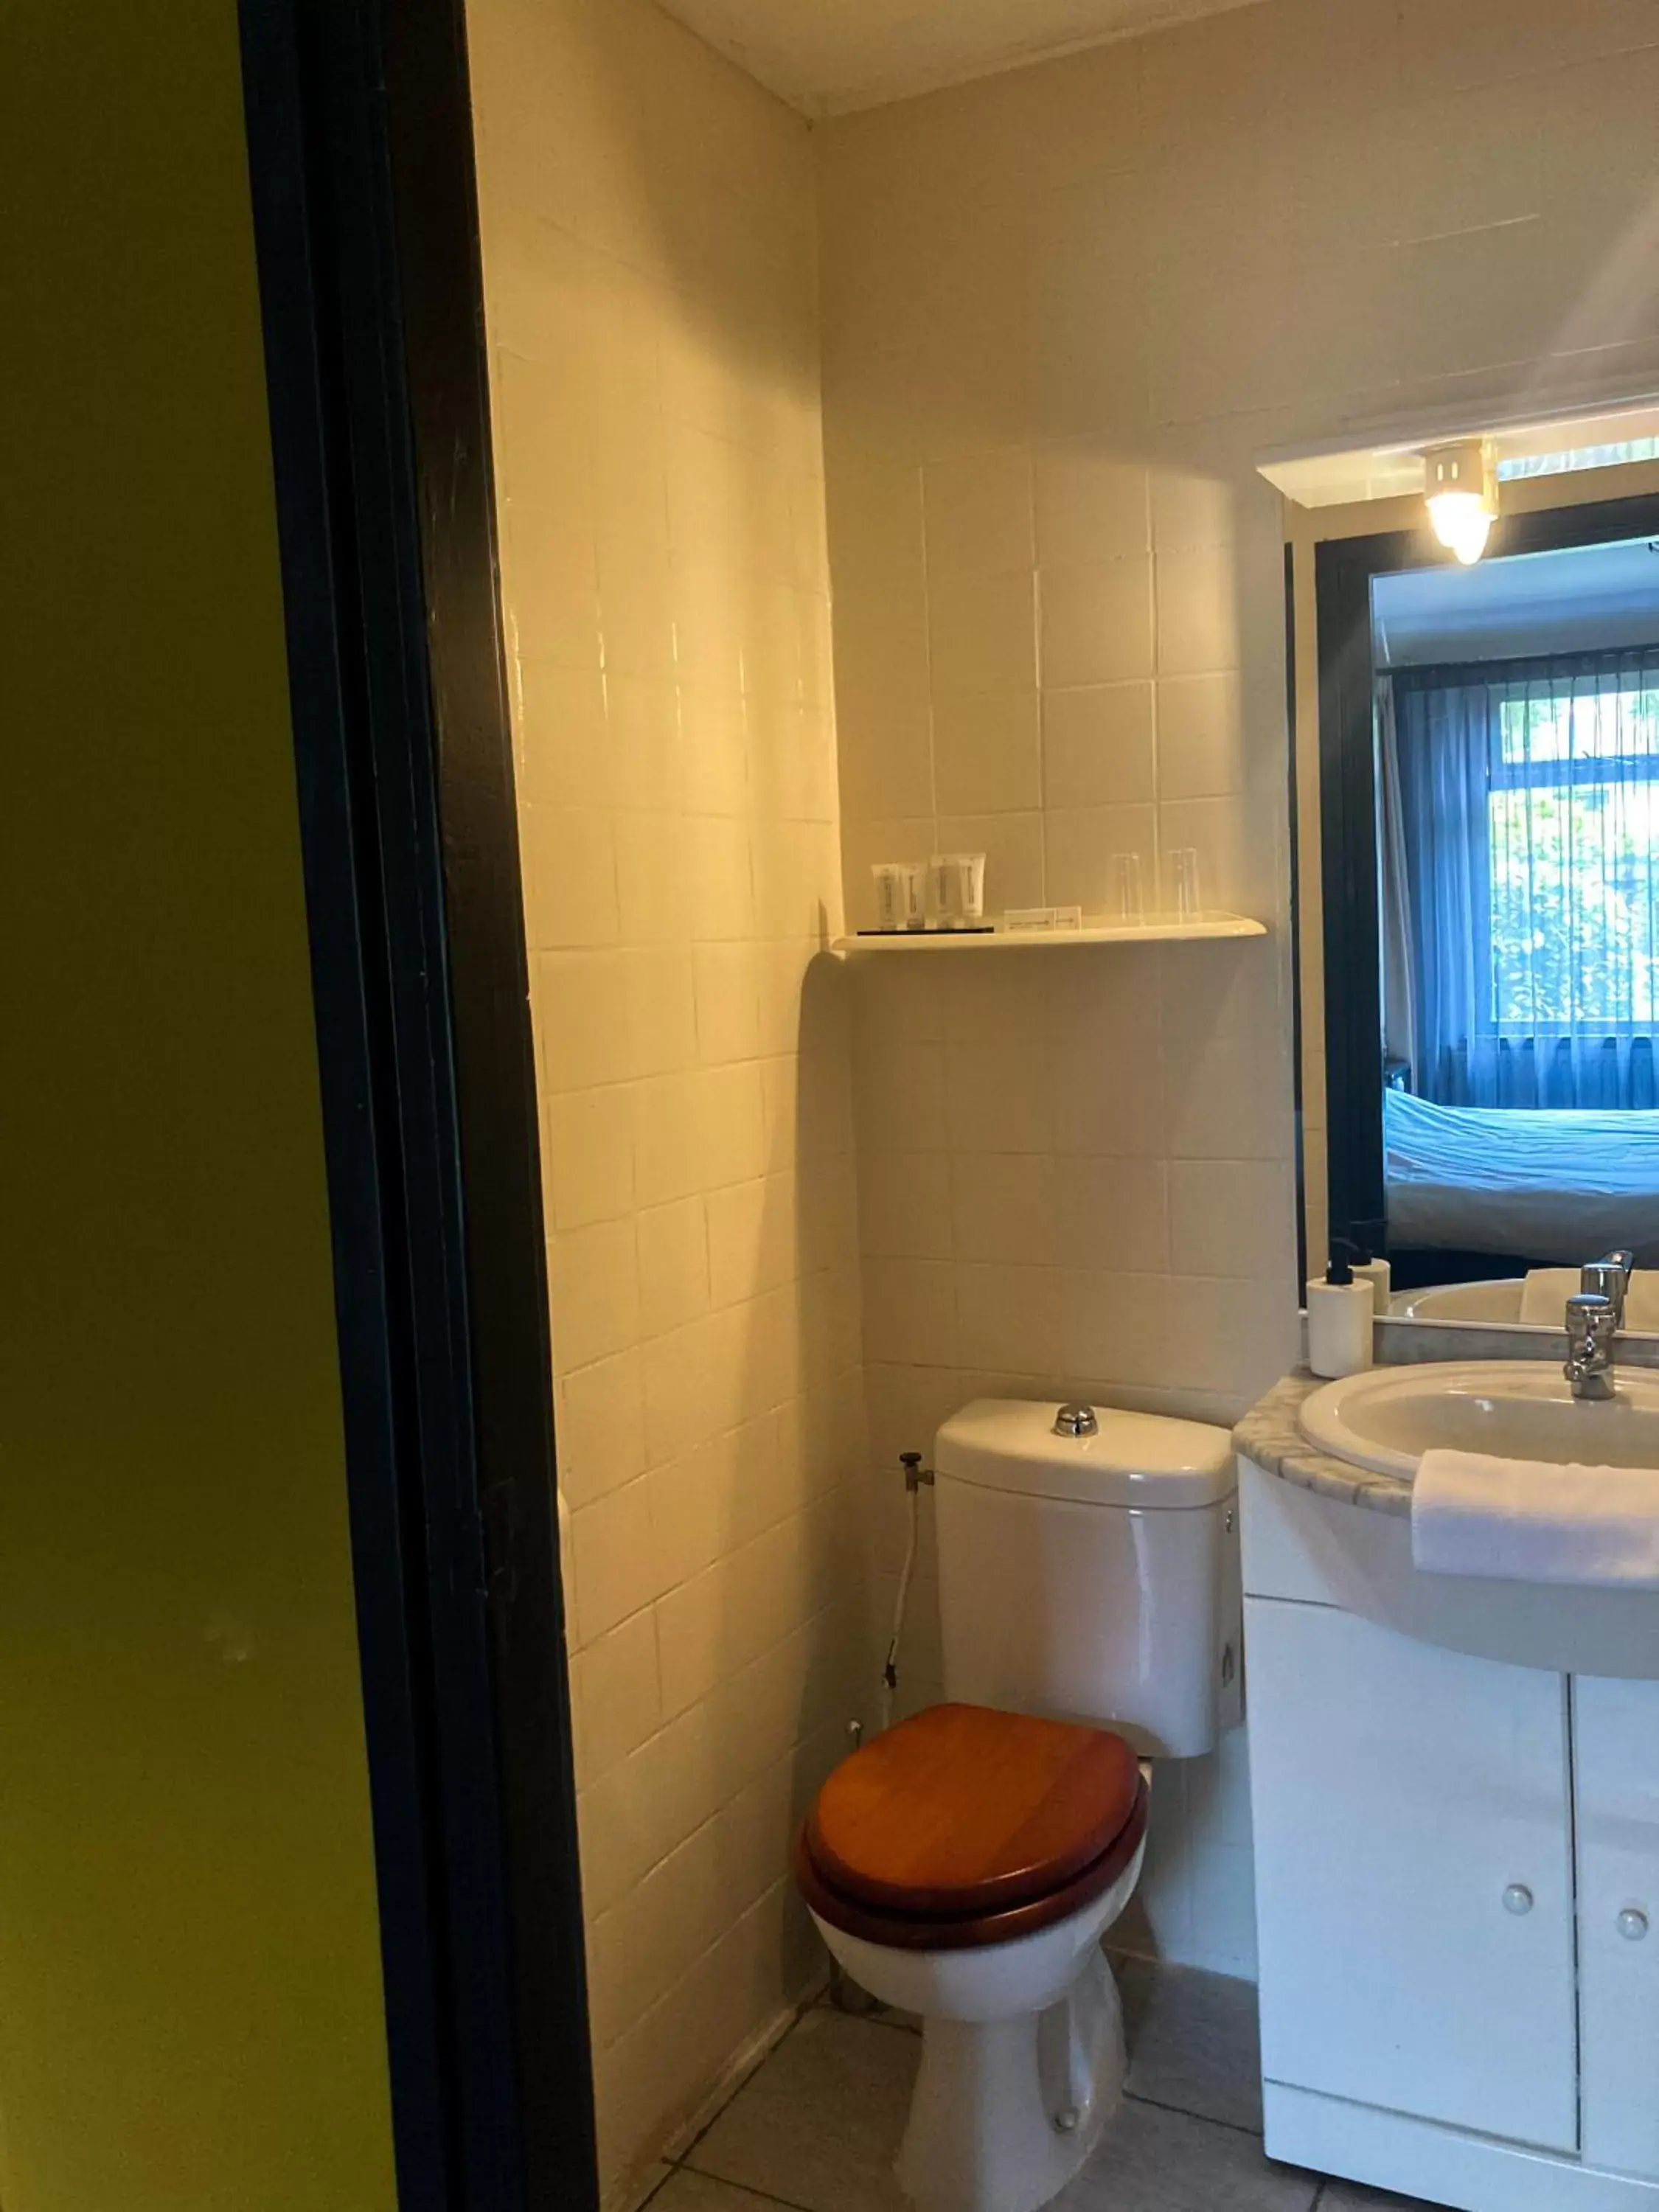 Bathroom in 't Zwanemeer